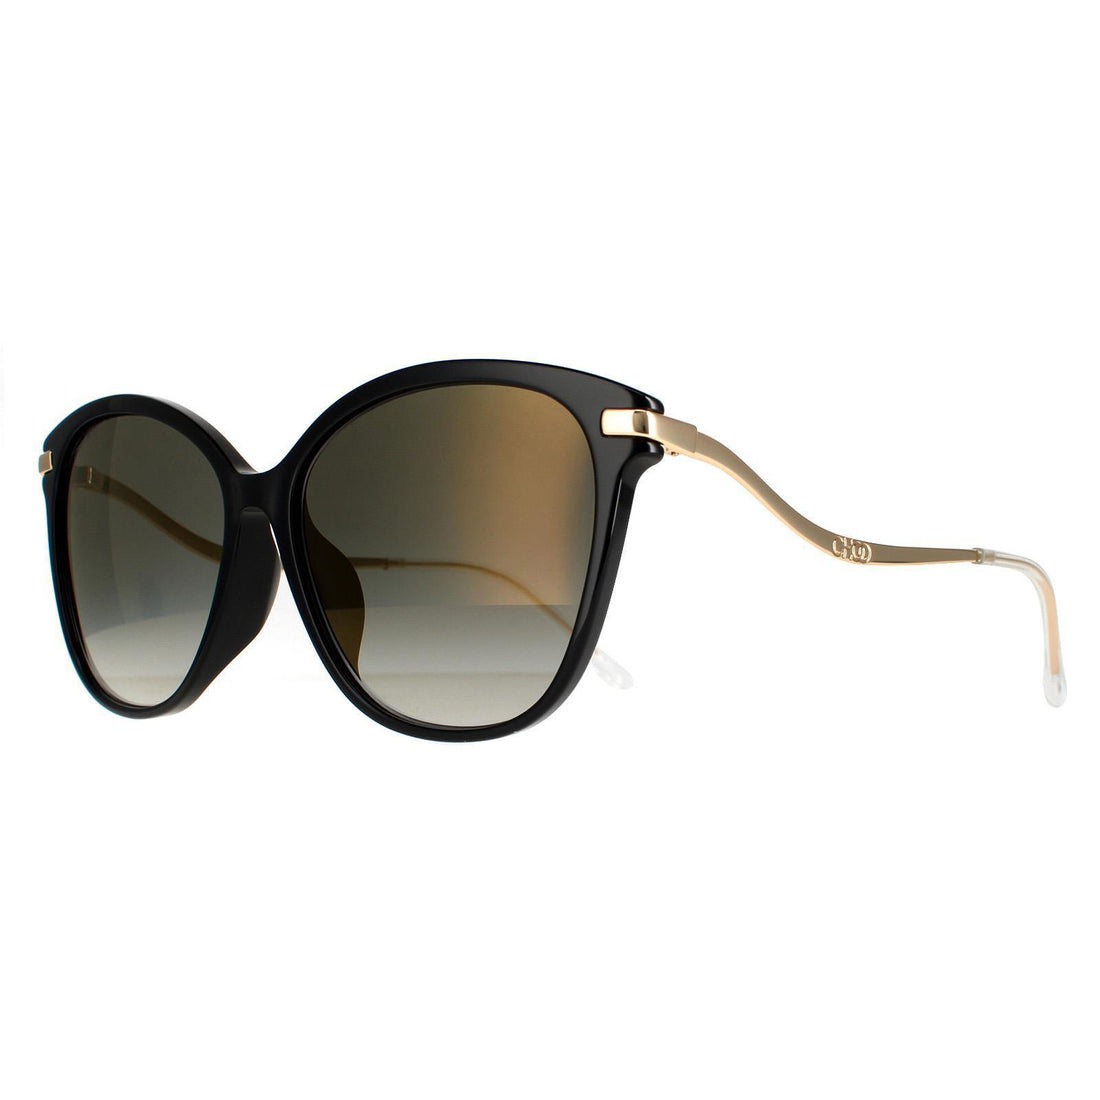 Jimmy Choo Sunglasses Peg/F/S 807 FQ Black Grey Gradient Gold Mirror